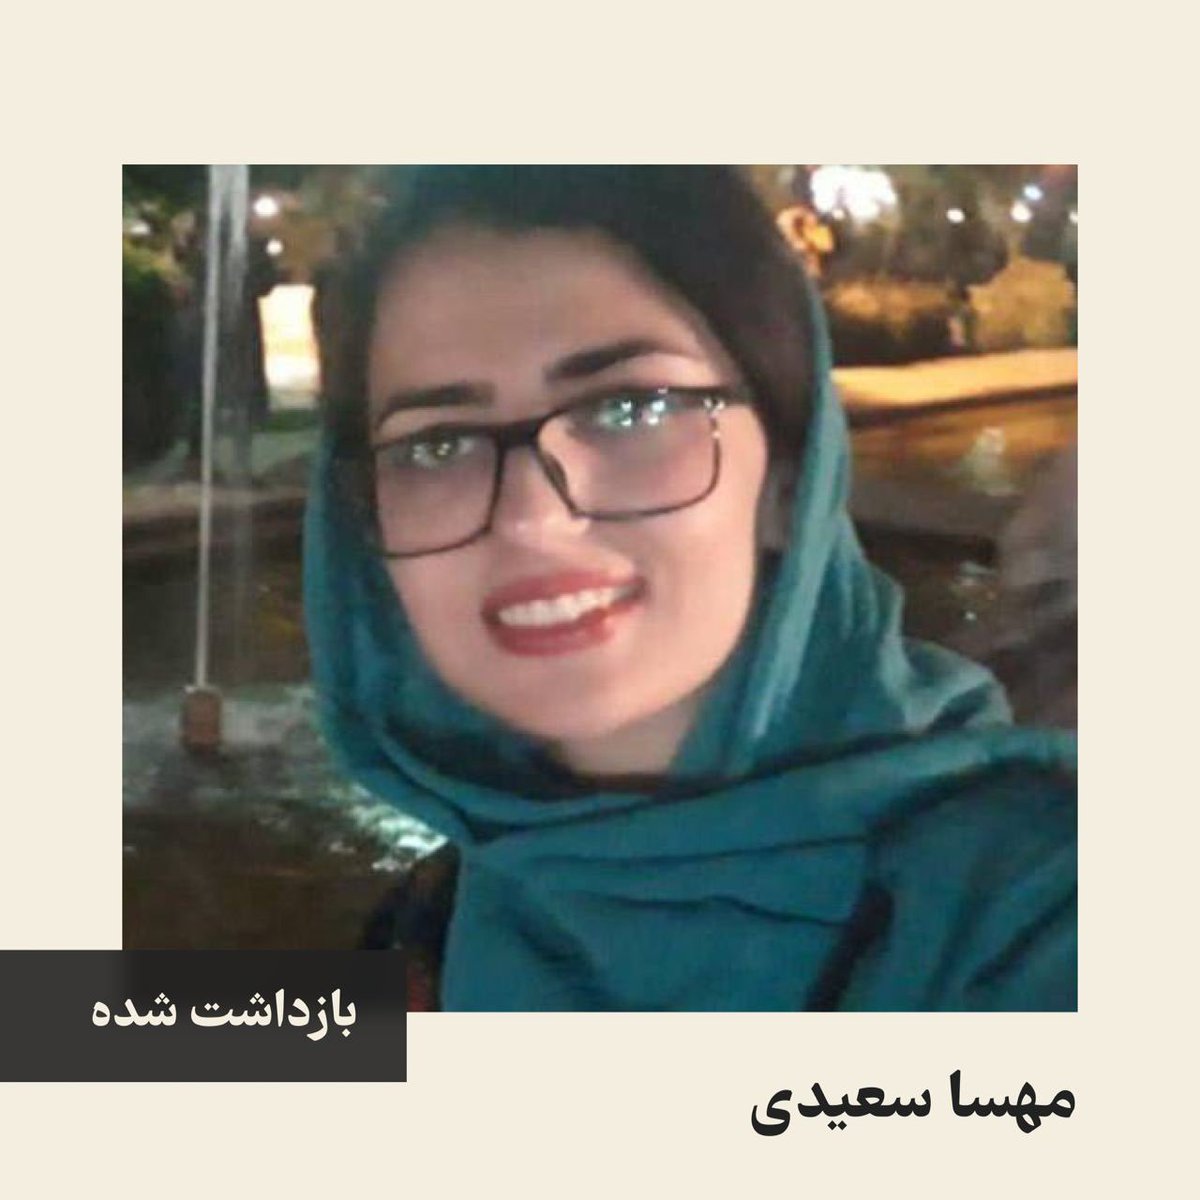 #مهسا_سعیدی دانشجوی دانشگاه یزد، در تاریخ ۲۰ شهریور ۱۴۰۲، توسط اطلاعات سپاه در یزد بازداشت شد و هیچ اطلاعاتی از محل بازداشت و شرایط او در دسترس نیست. #مهسا_امینی